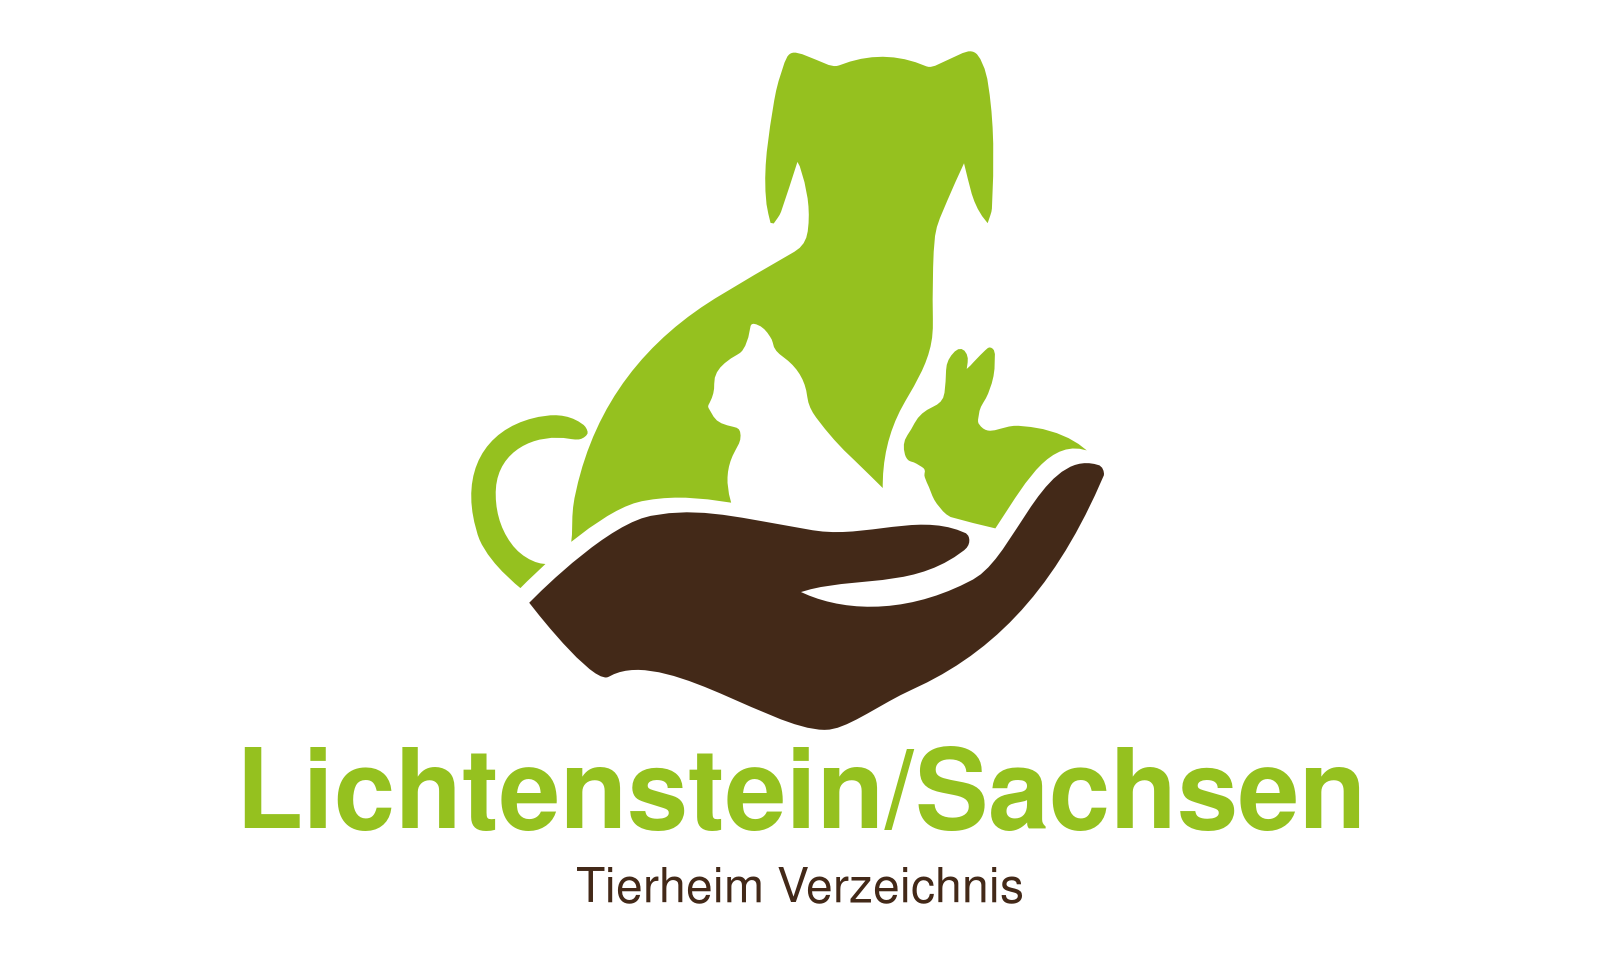 Tierheim Lichtenstein/Sachsen